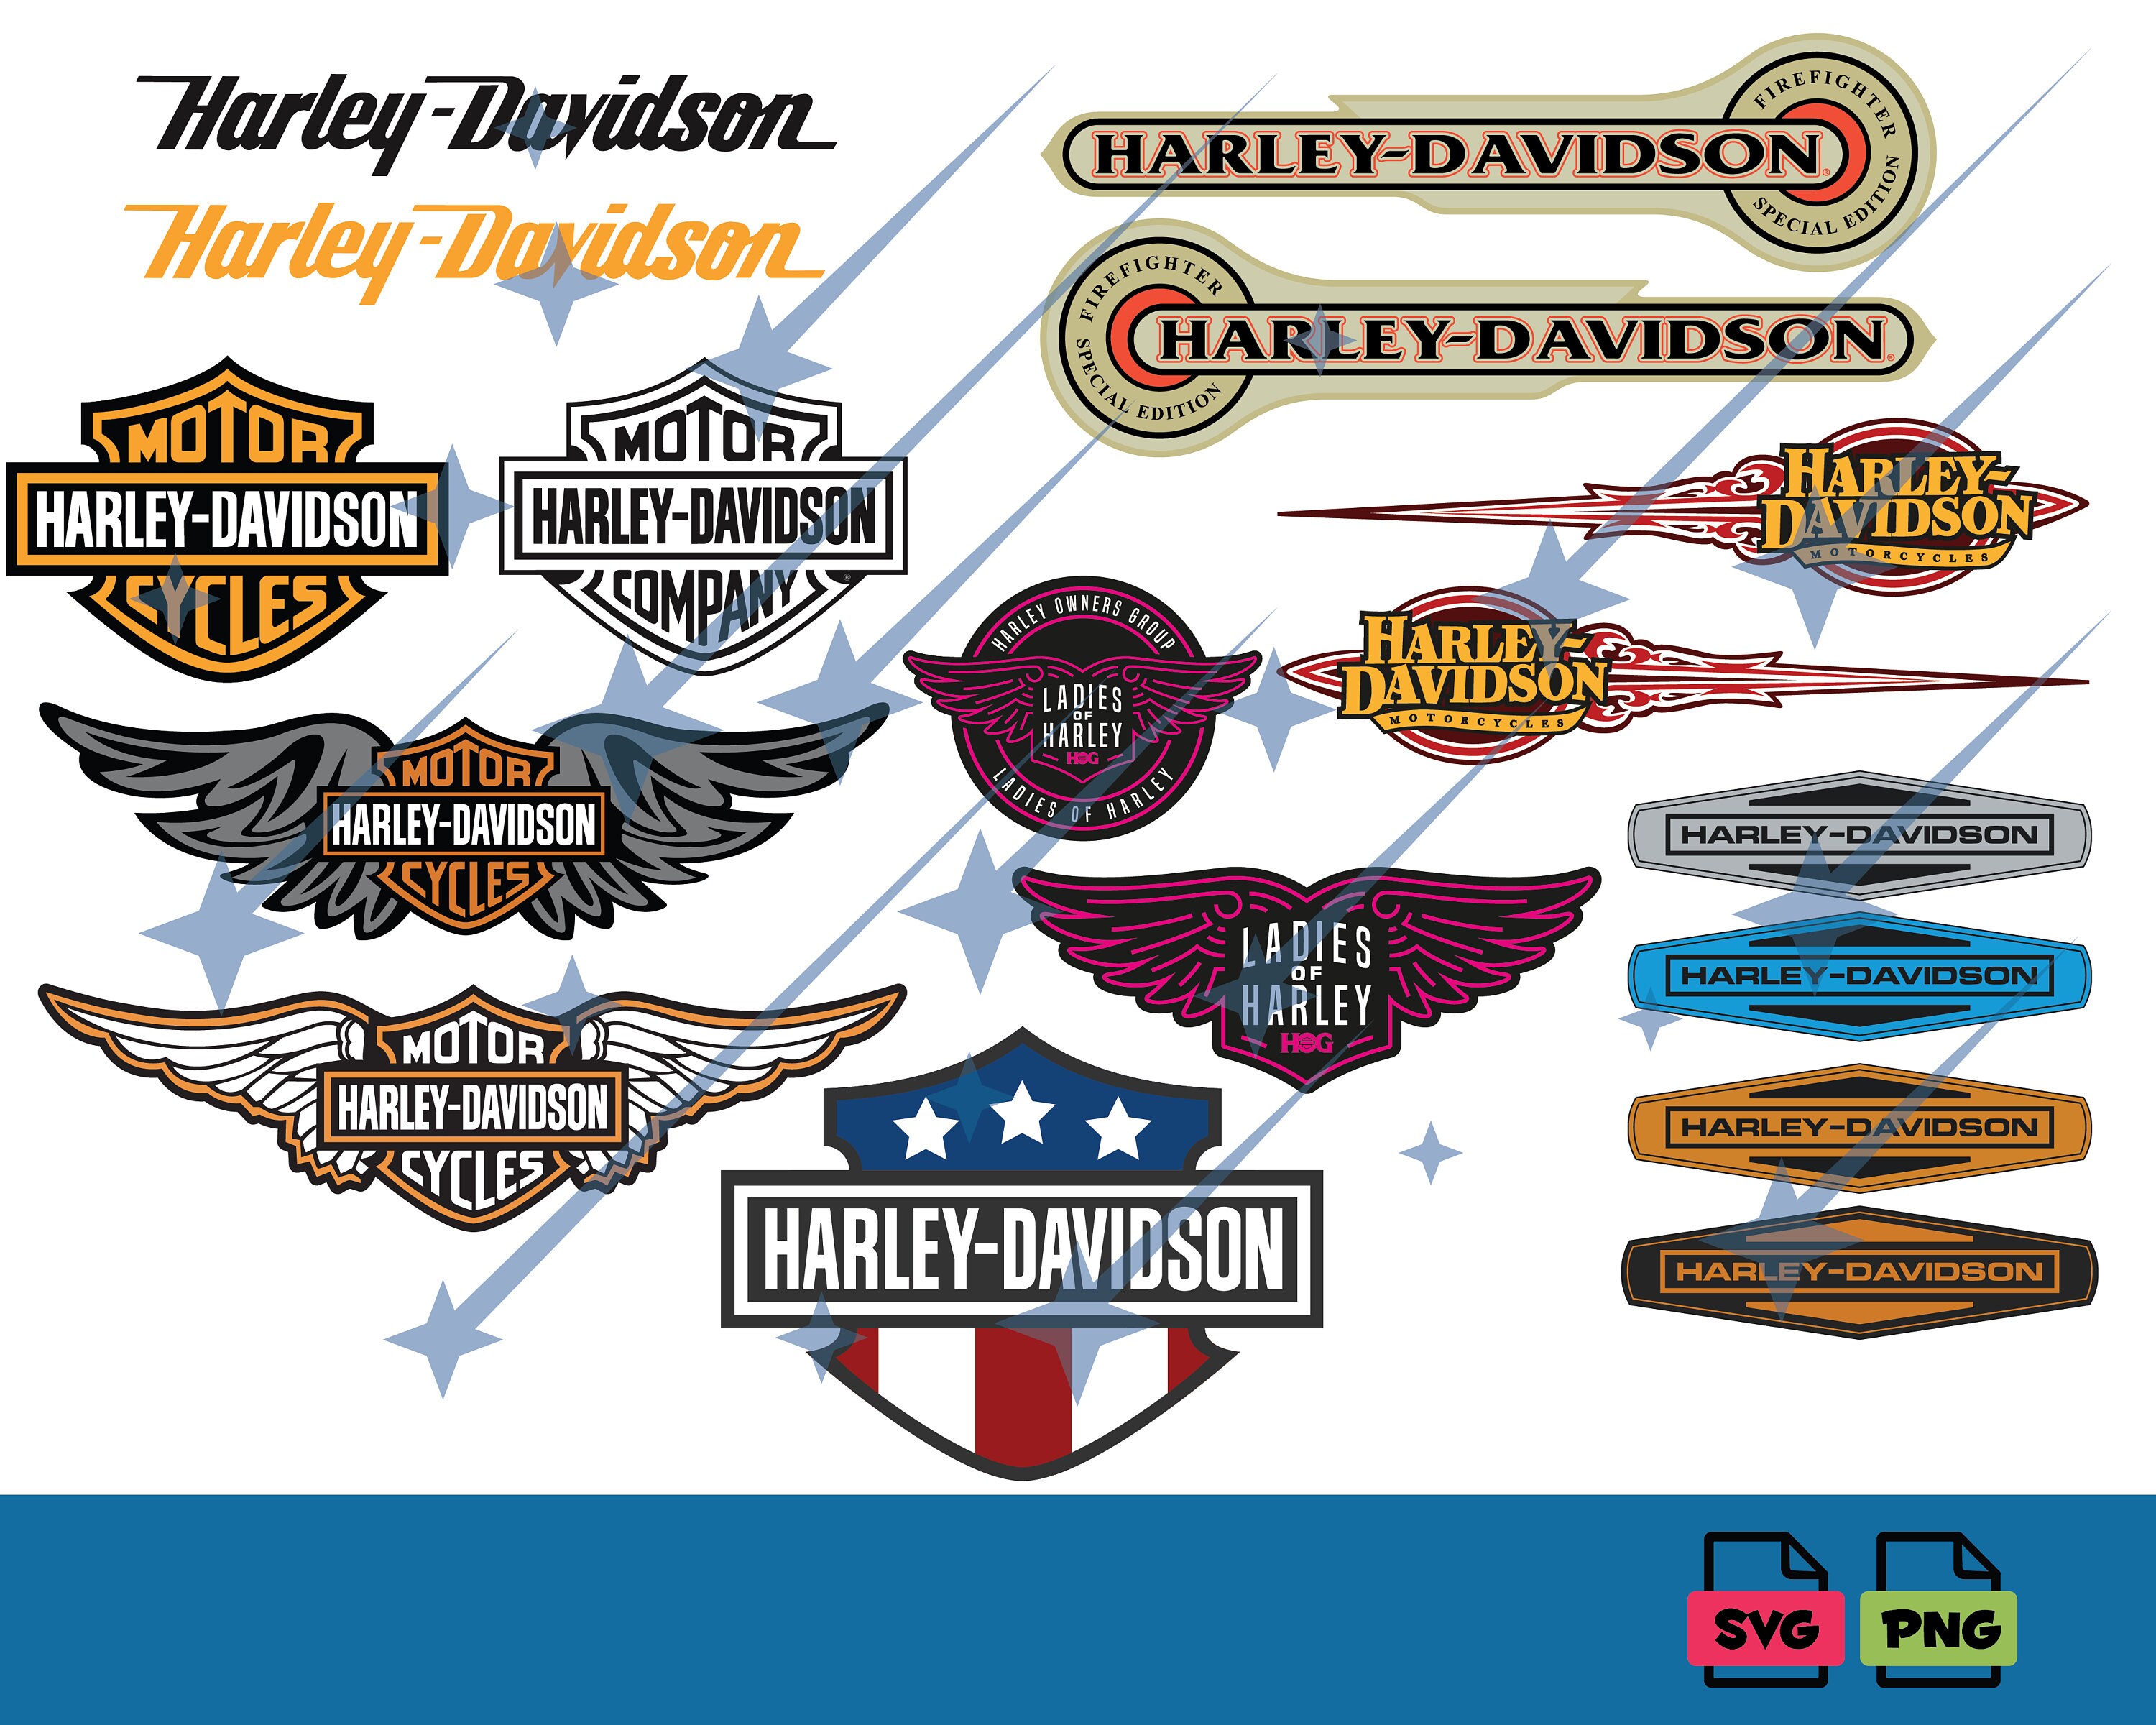 Casquette Harley Davidson Logo Homme Noir 5 Panneaux 100 Coton 340